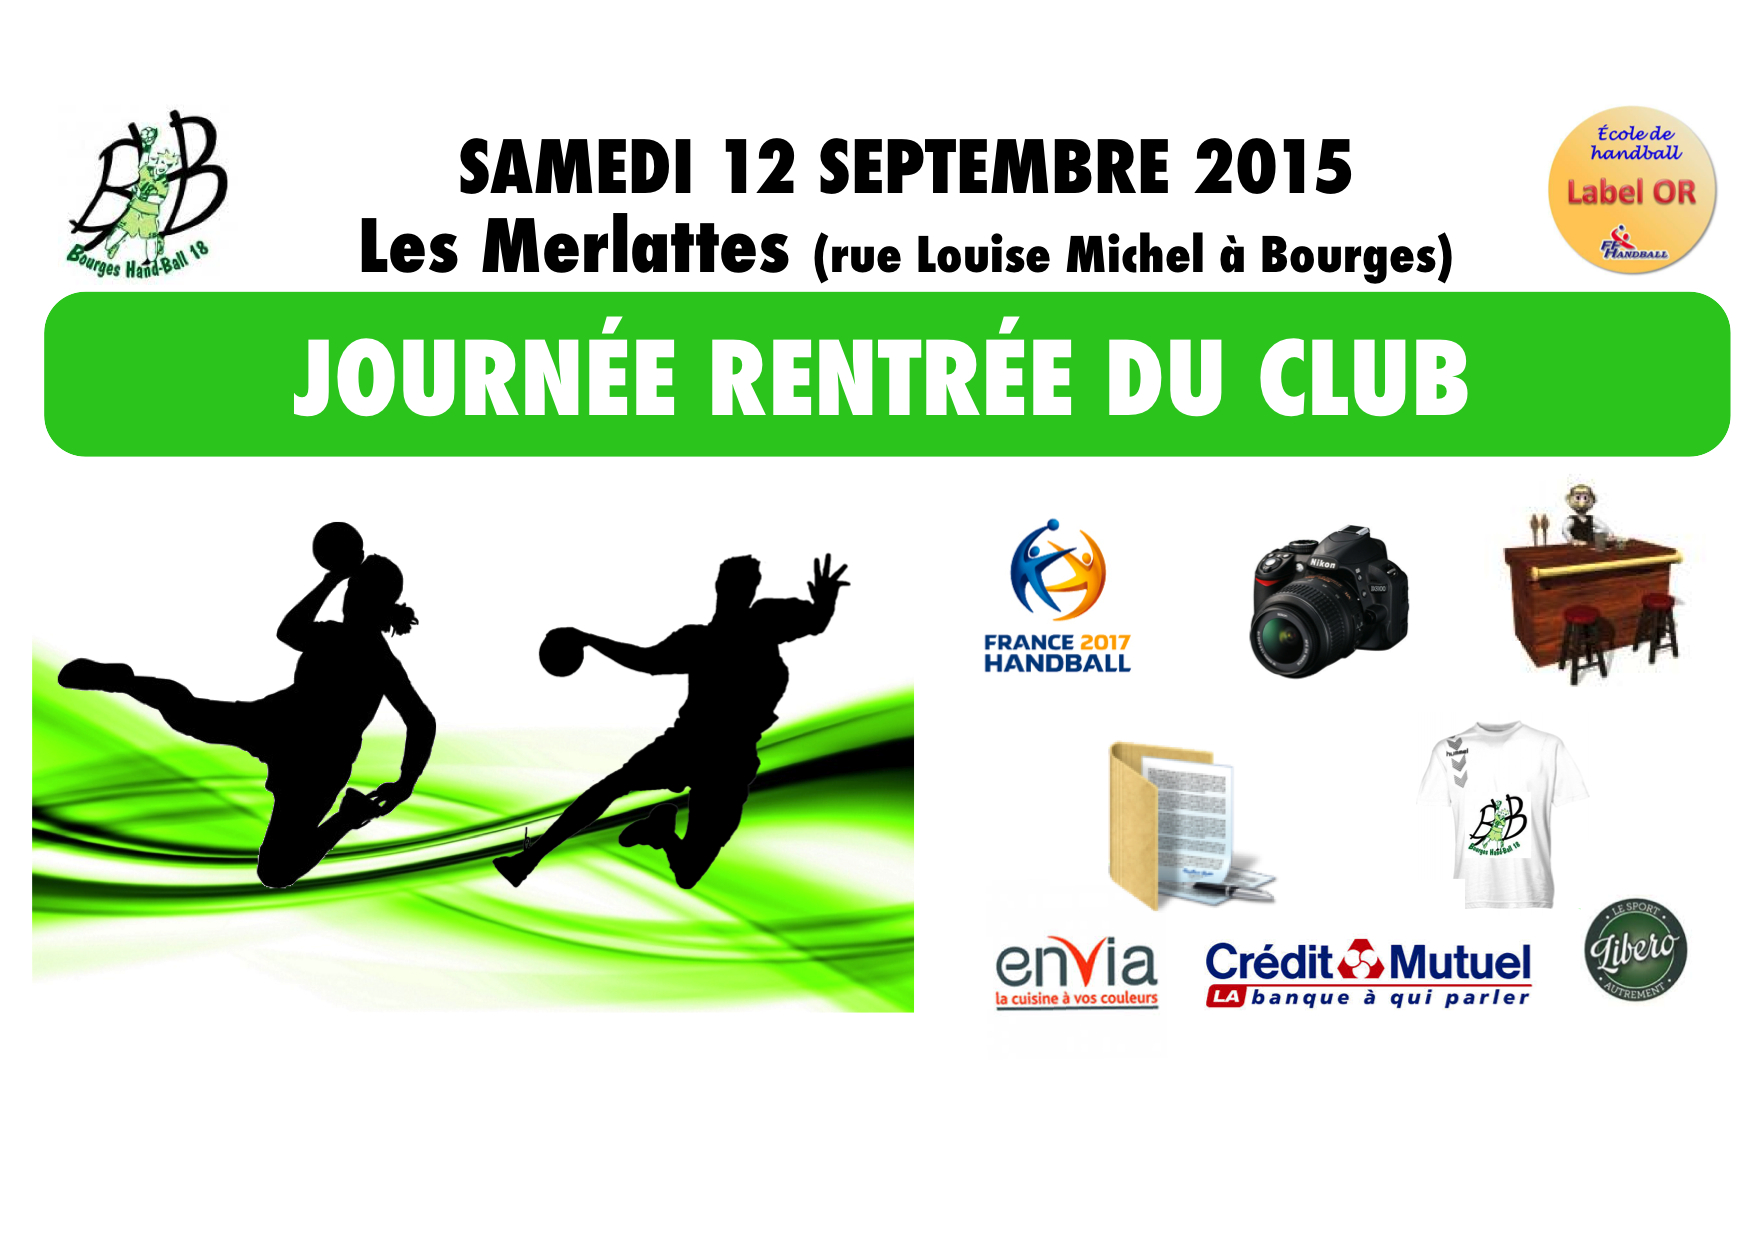 Samedi 12 septembre 2015 : journée ‘Rentrée du club’ aux Merlattes